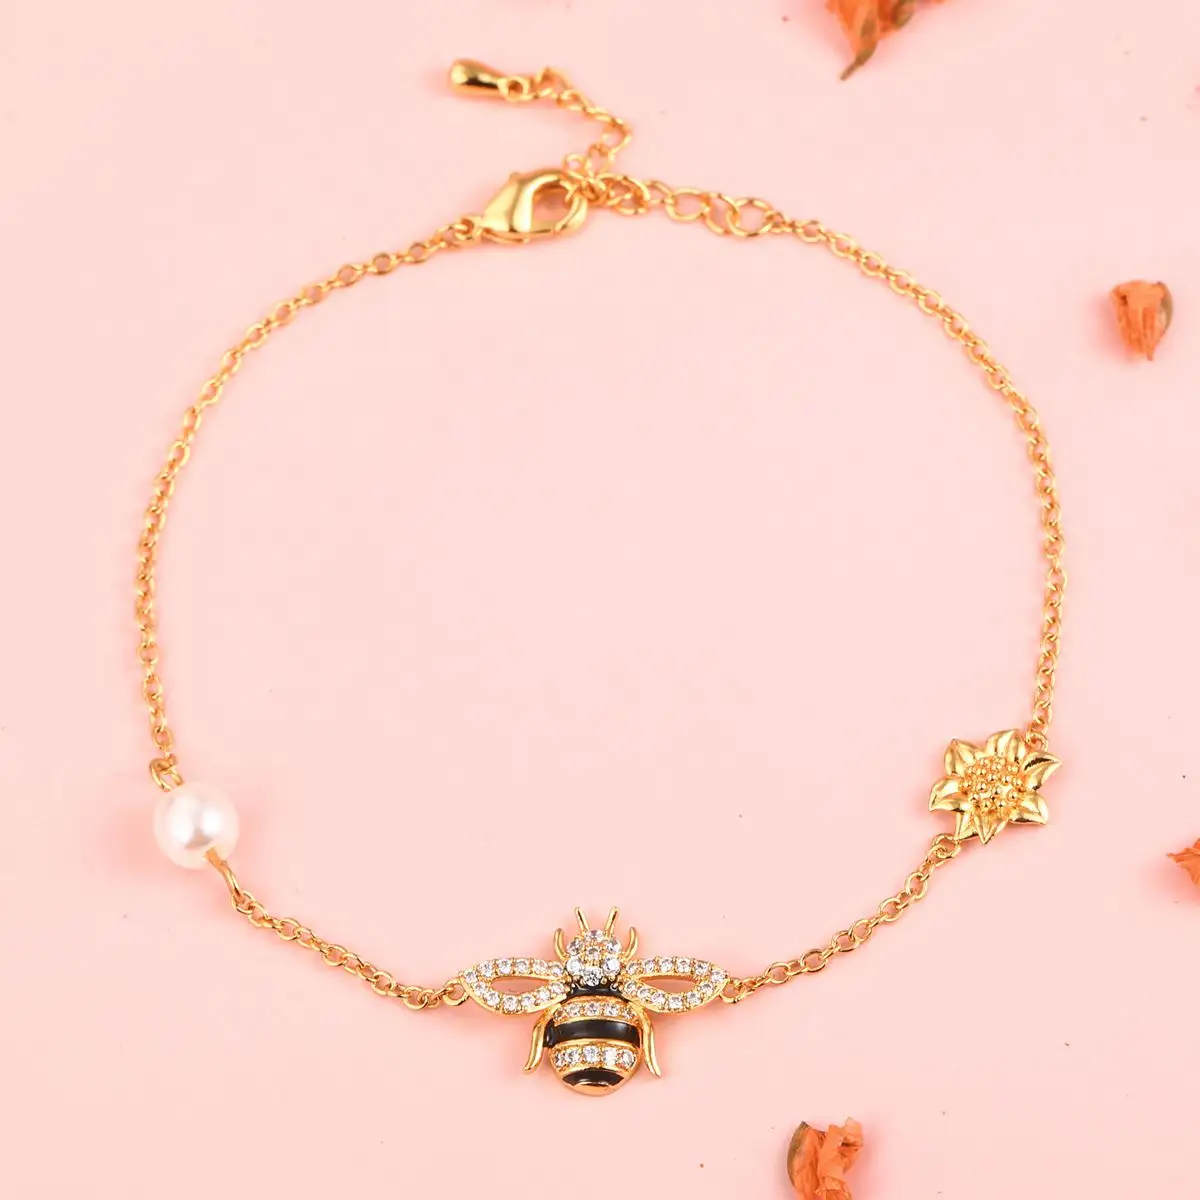 Bee bracelet and bangles pearl gold plated sun flower bracelet for girls women 925 silver bracelet